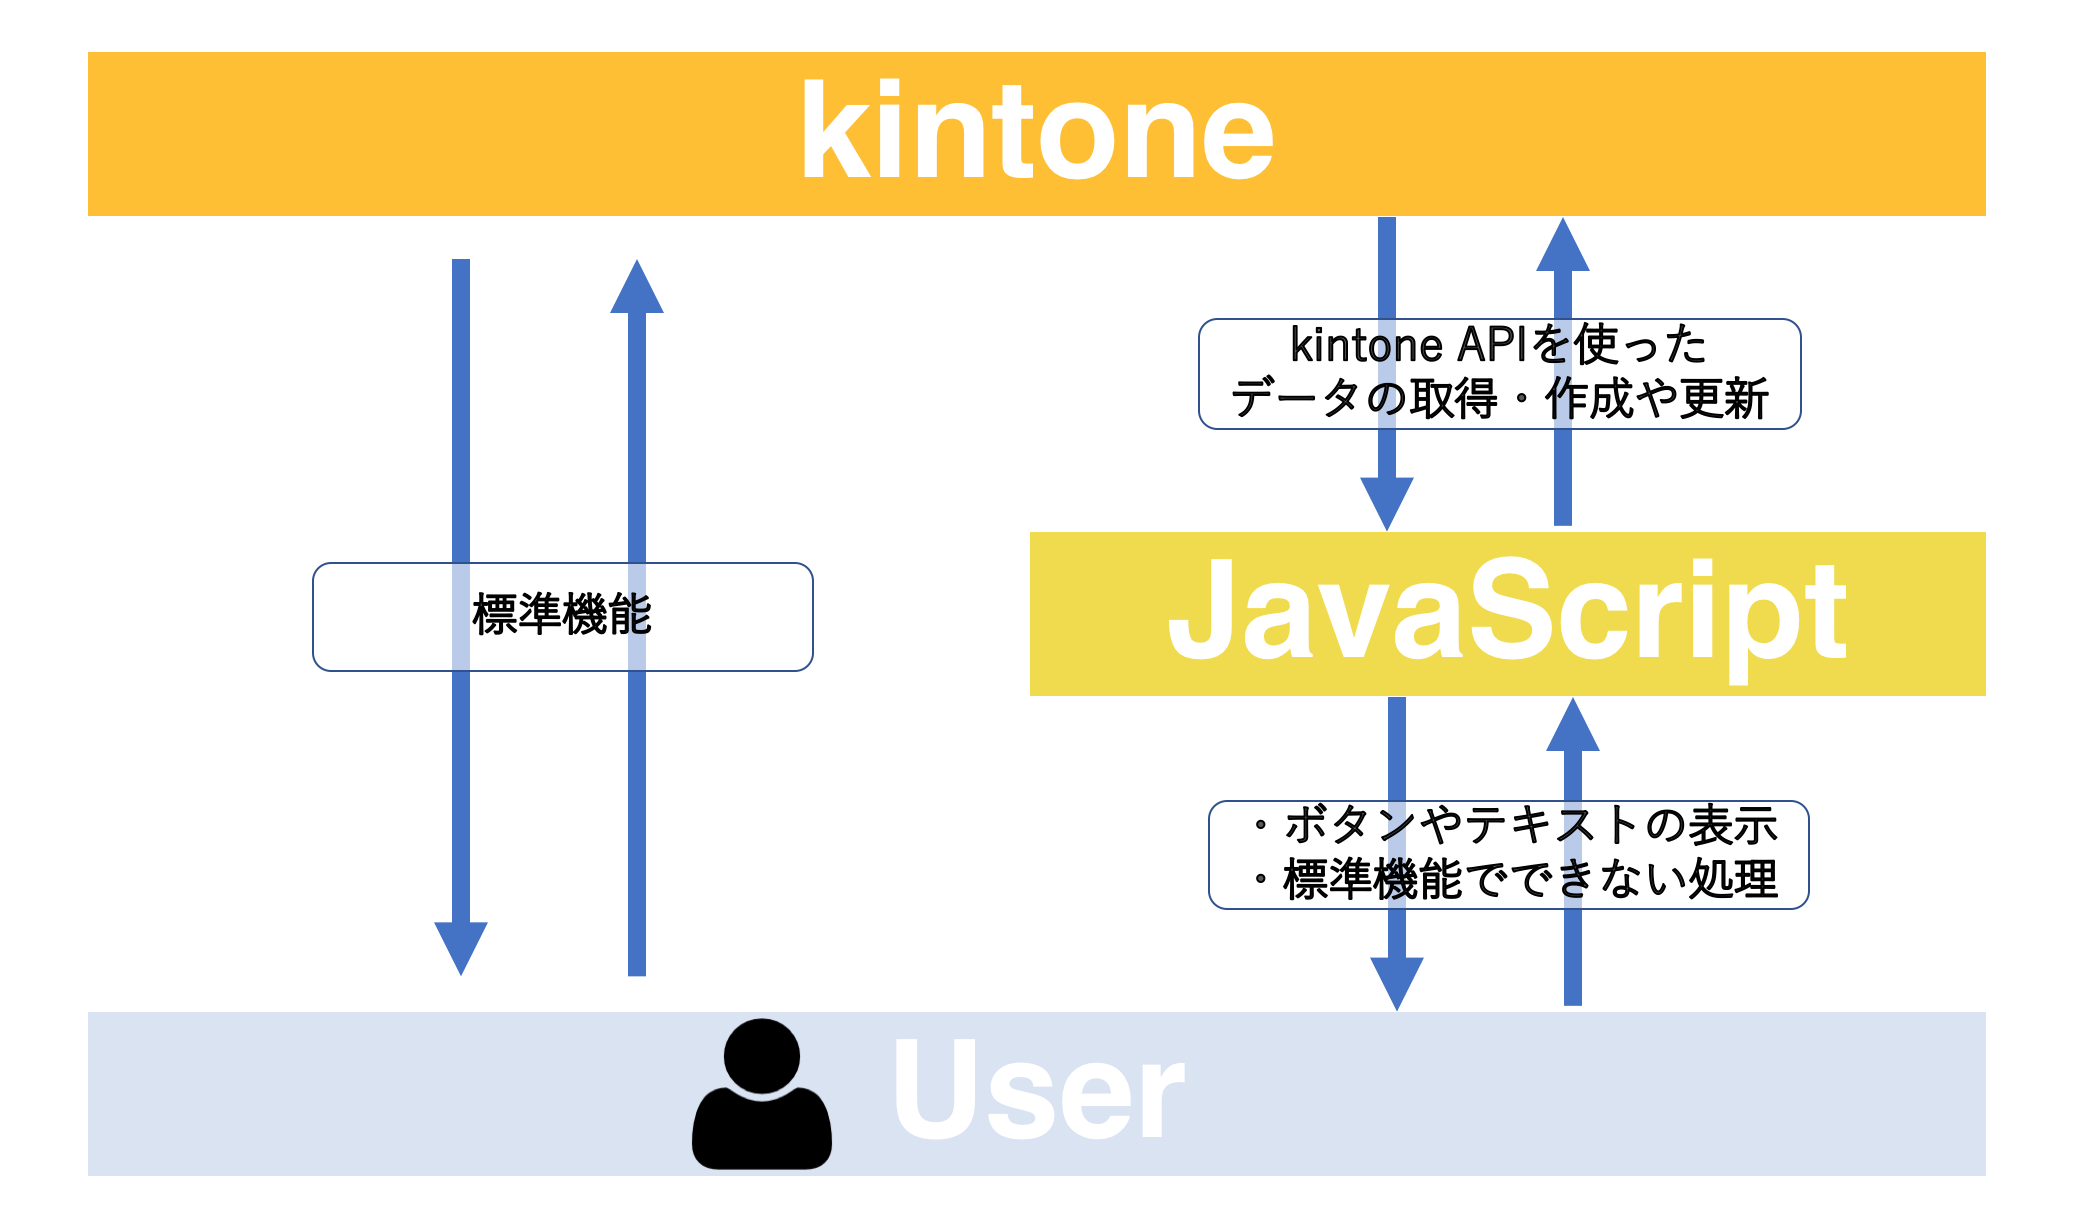 kintone と JavaScript カスタマイズのイメージ図